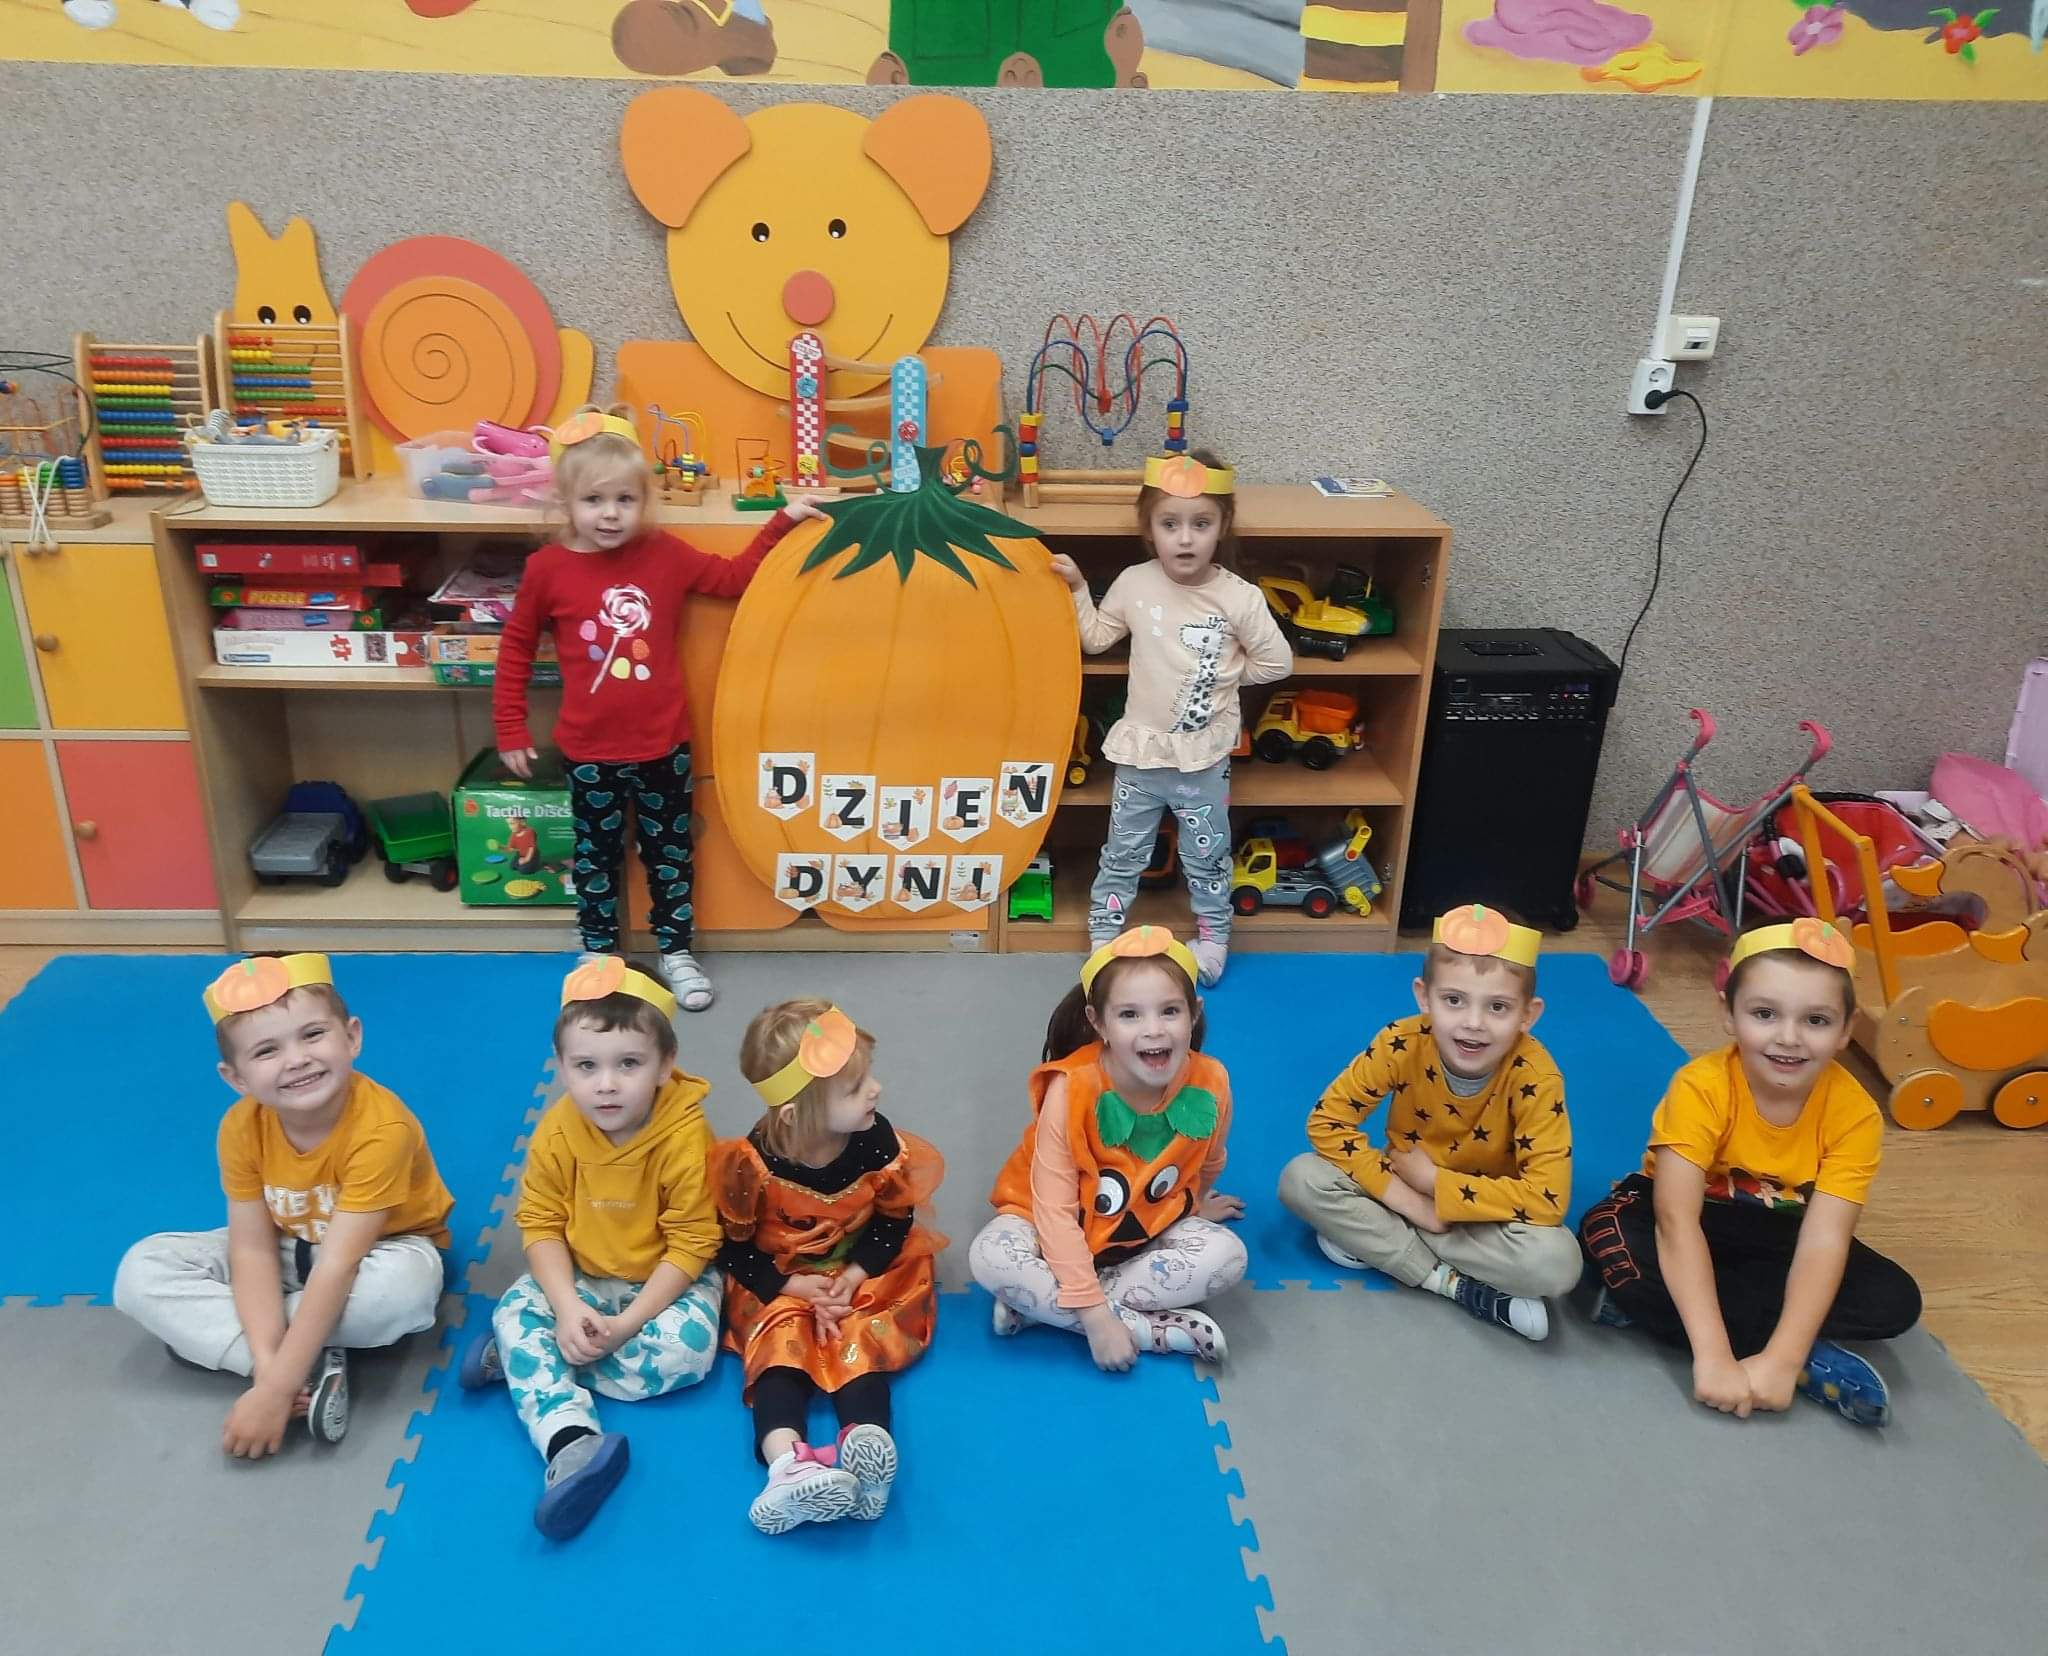 Przedszkolaki w pomarańczowych strojach i opaskach na głowach siedzą na dywanie na tle dyni z papieru